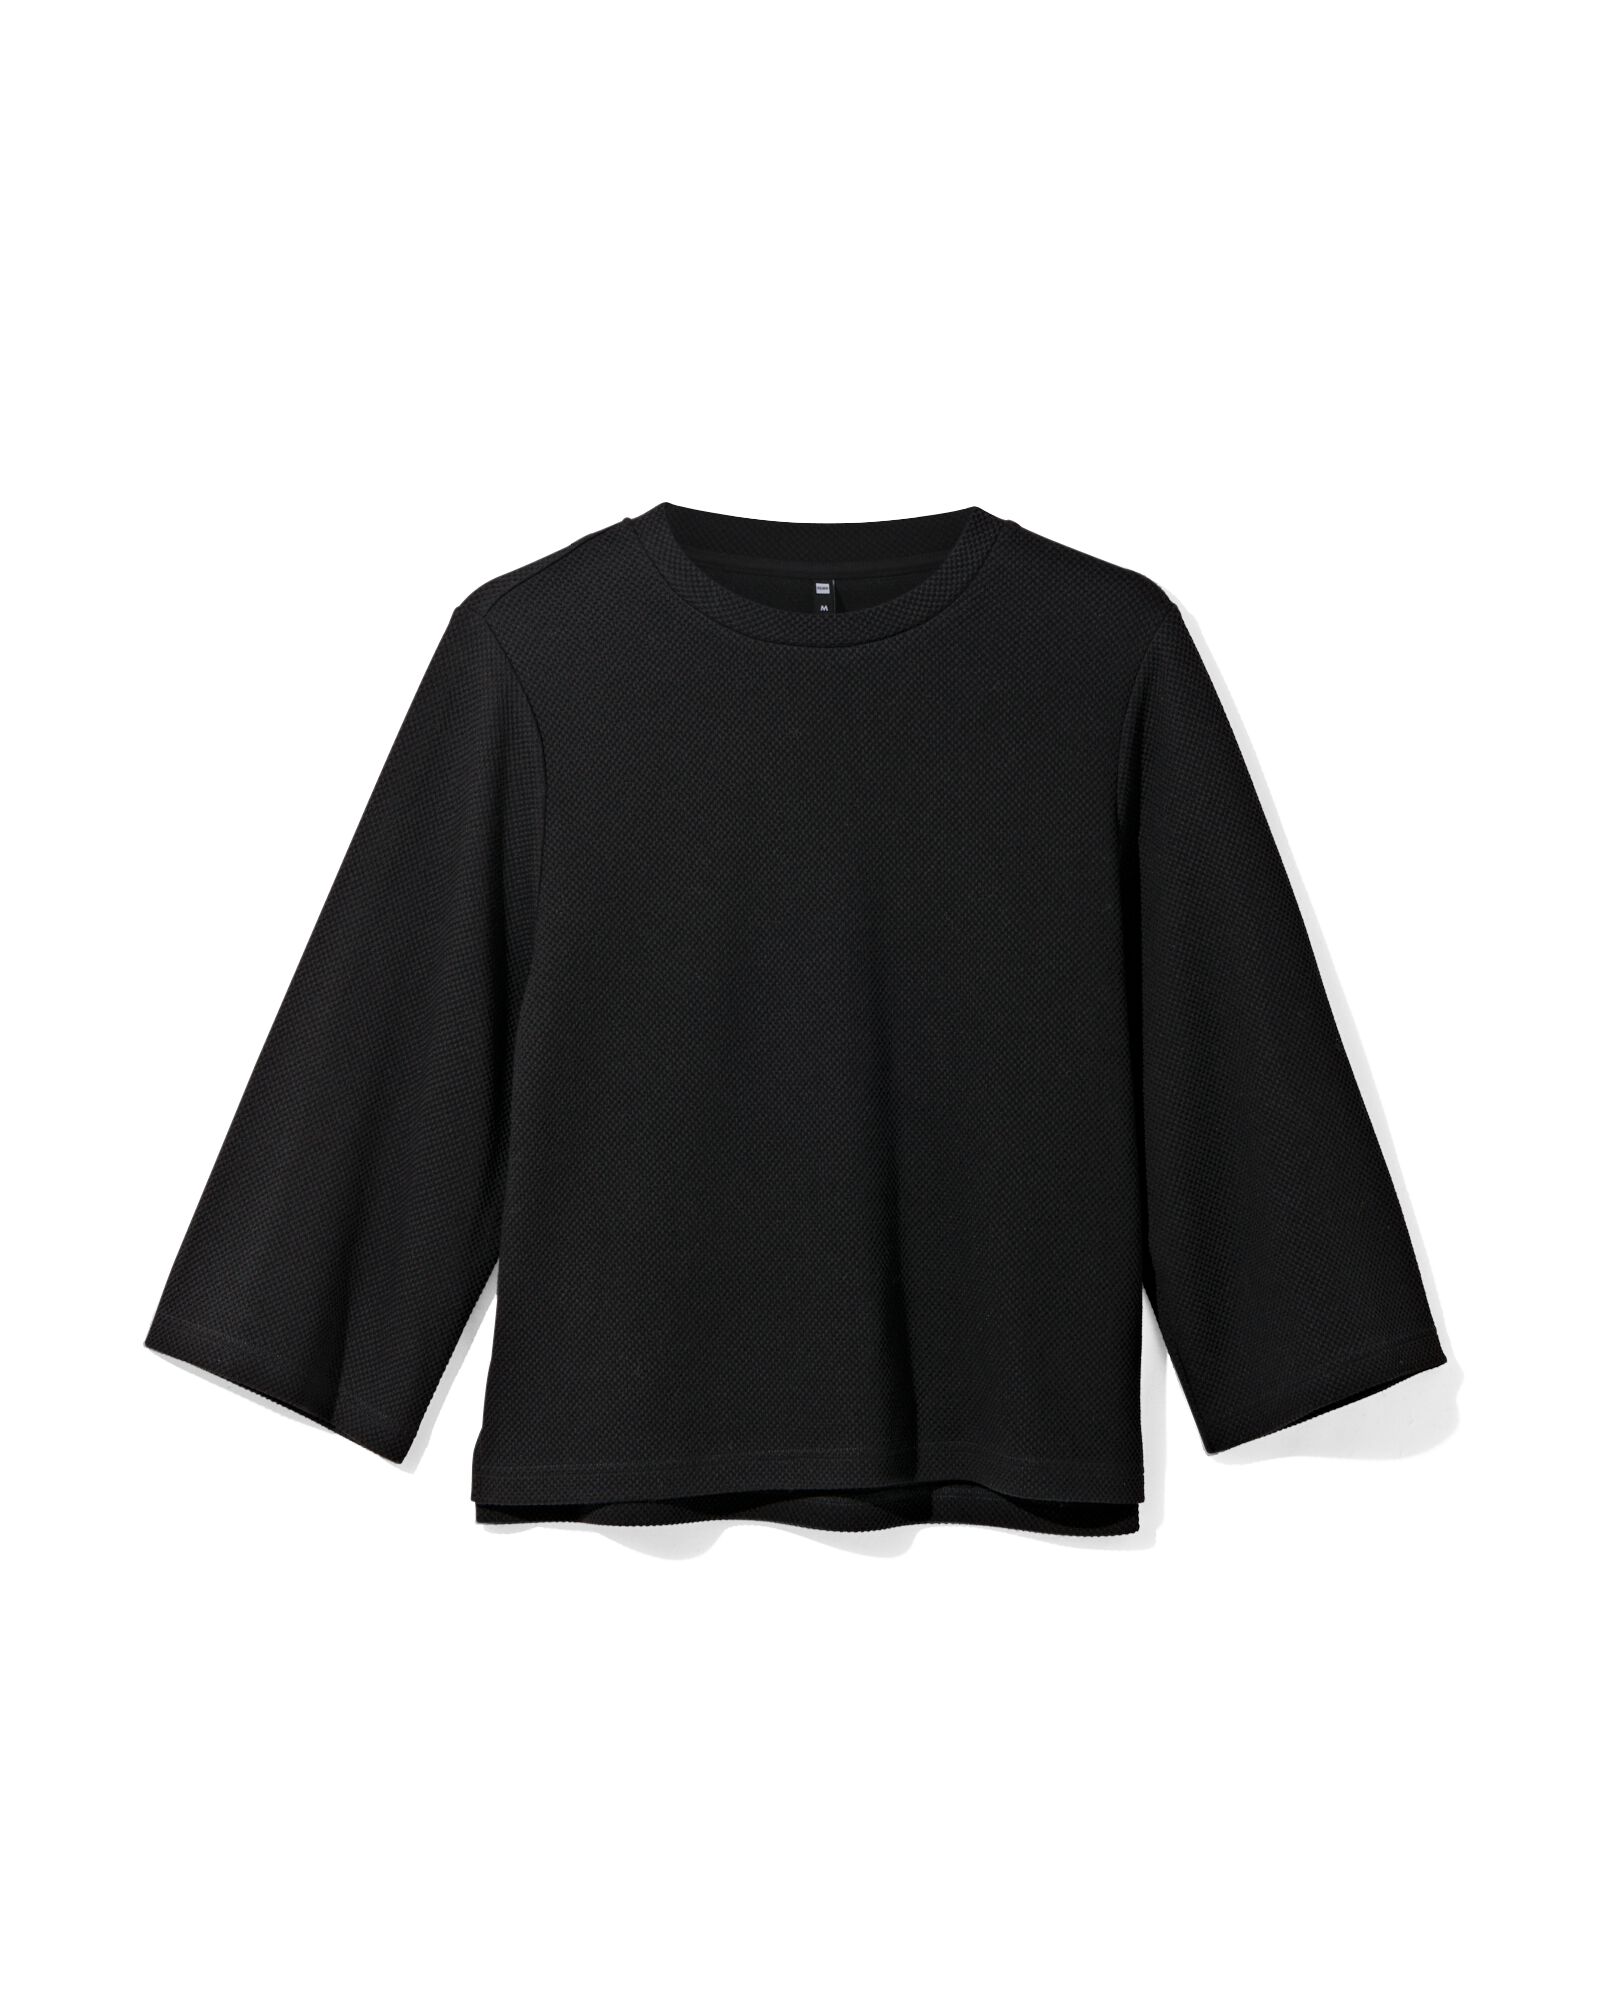 dames shirt Kacey met structuur zwart XL - 36298054 - HEMA